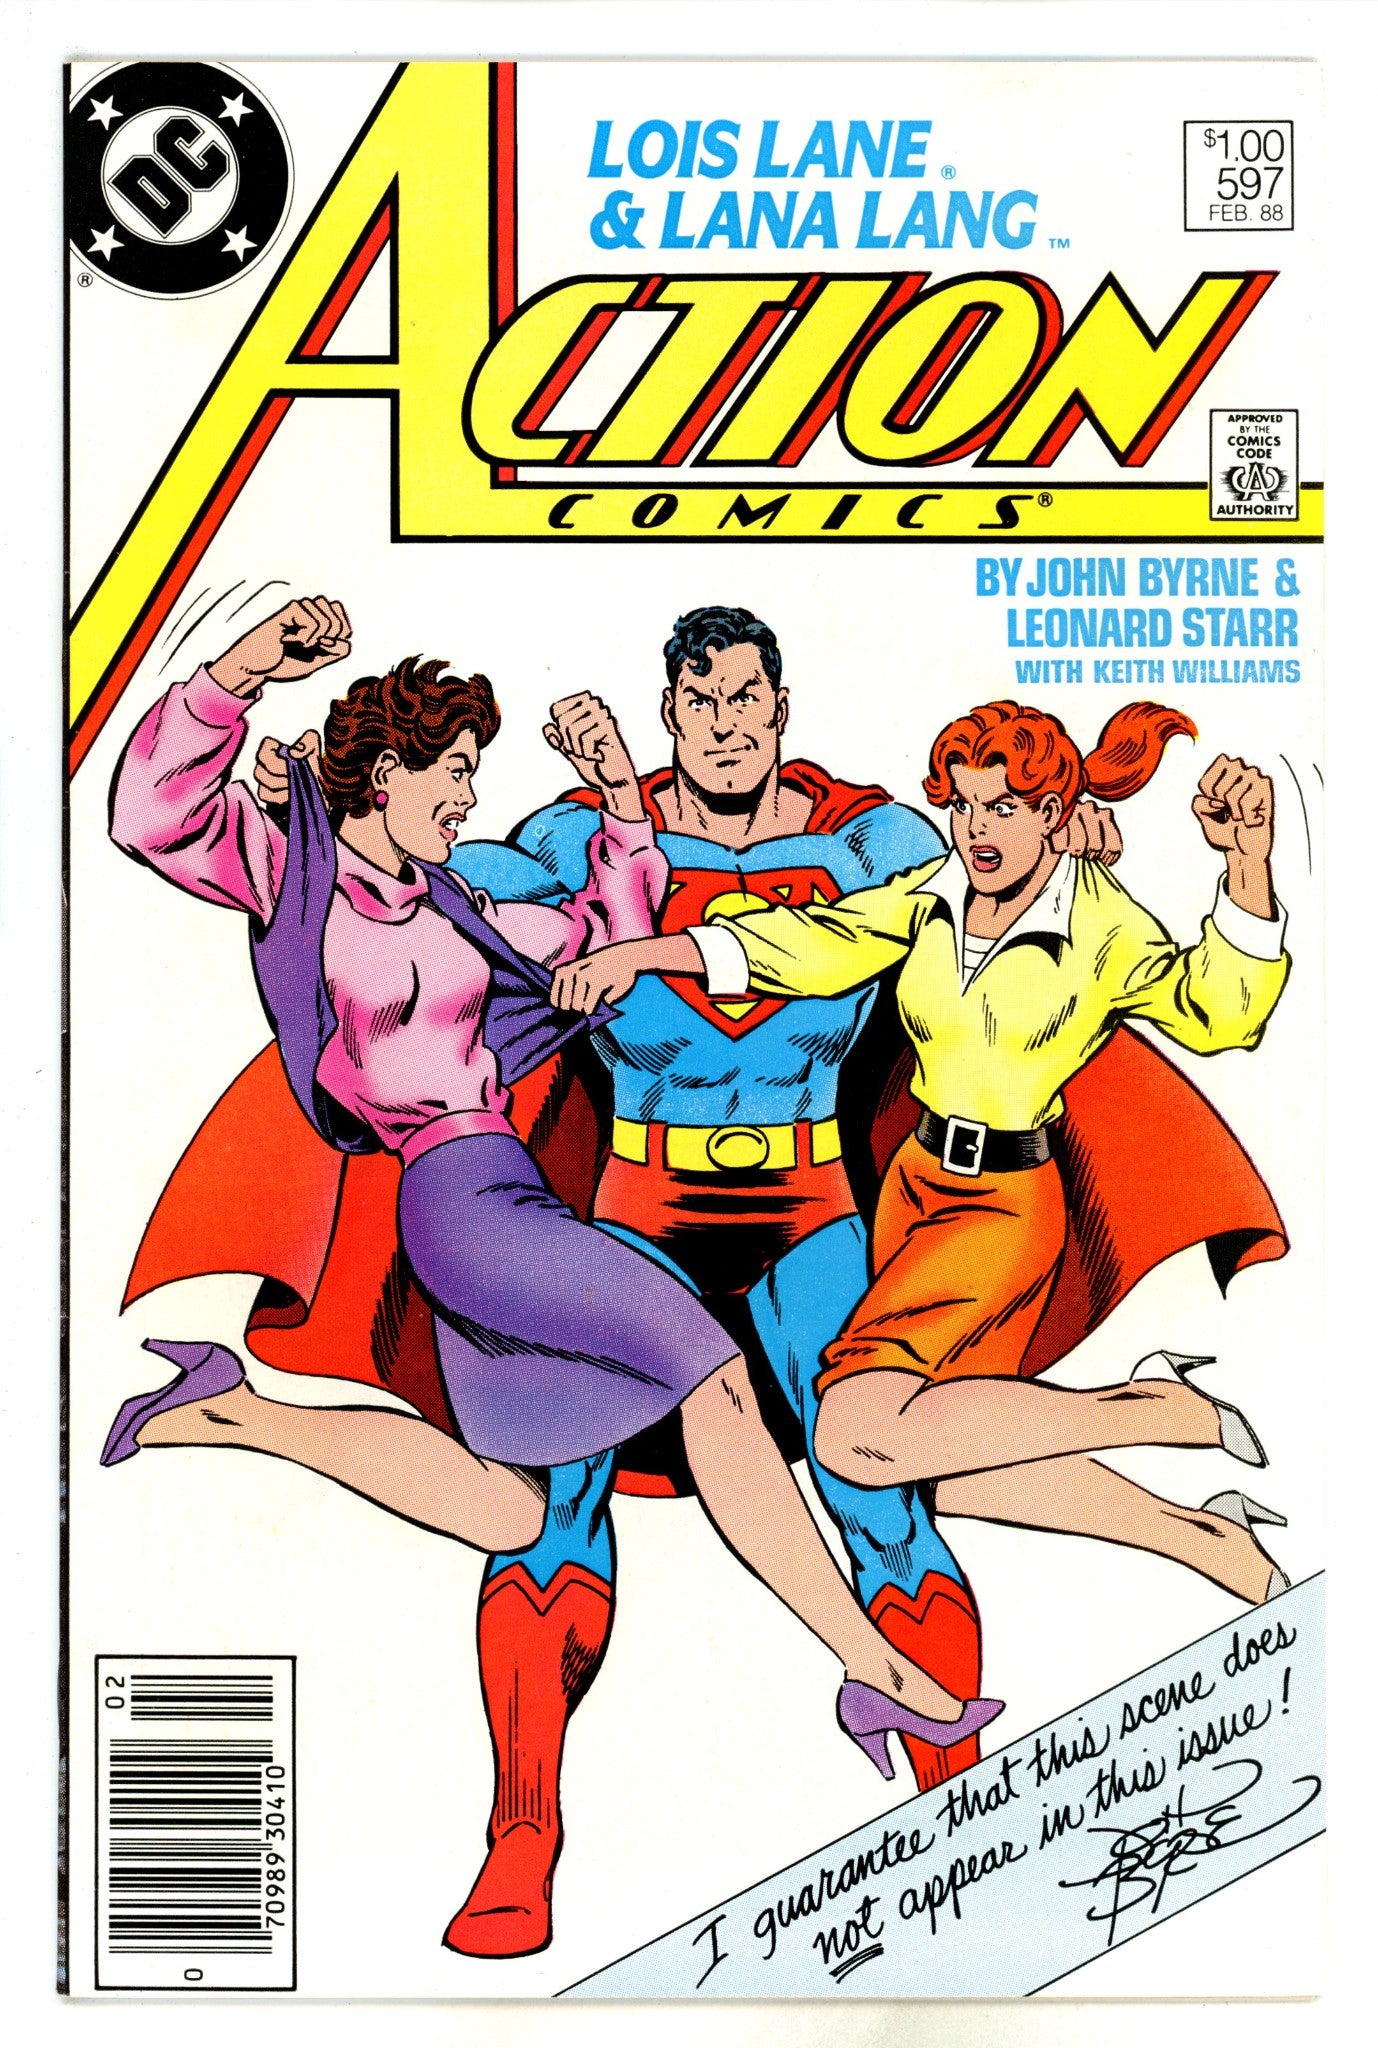 Action Comics Vol 1 597 Canadian NM